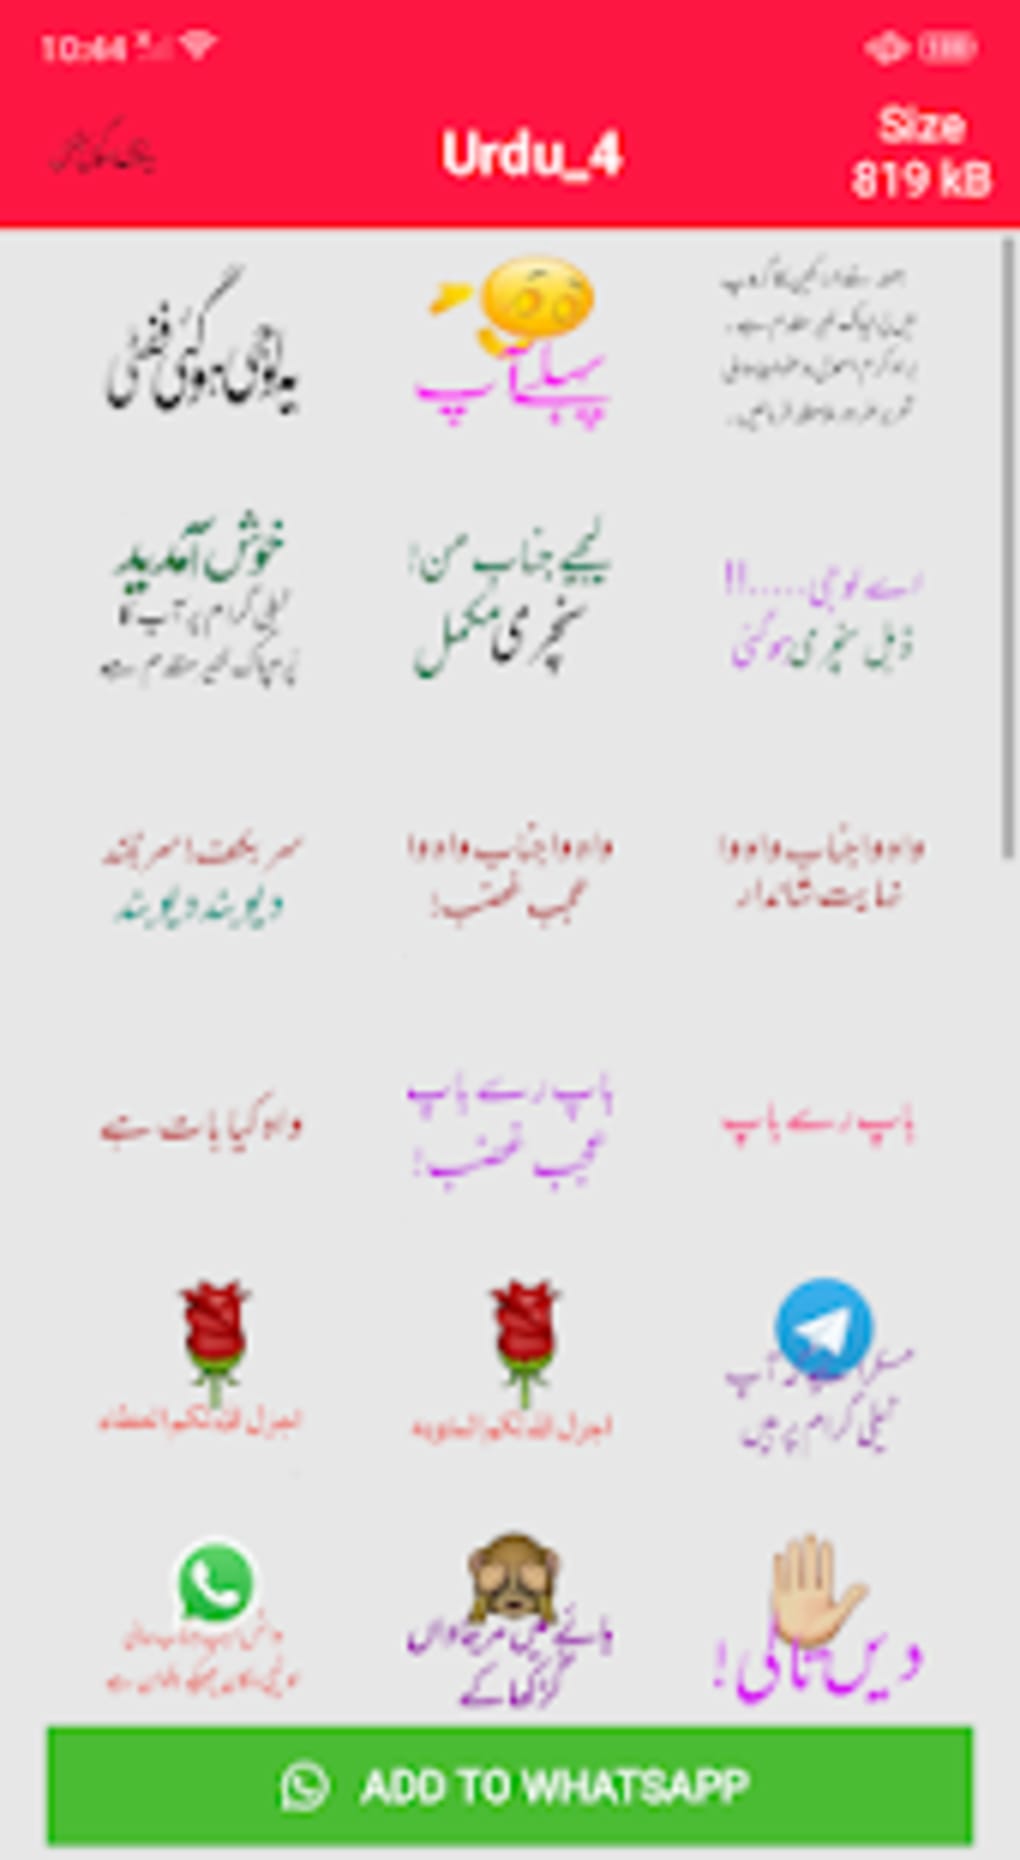 Whatsapp urdu stickers app